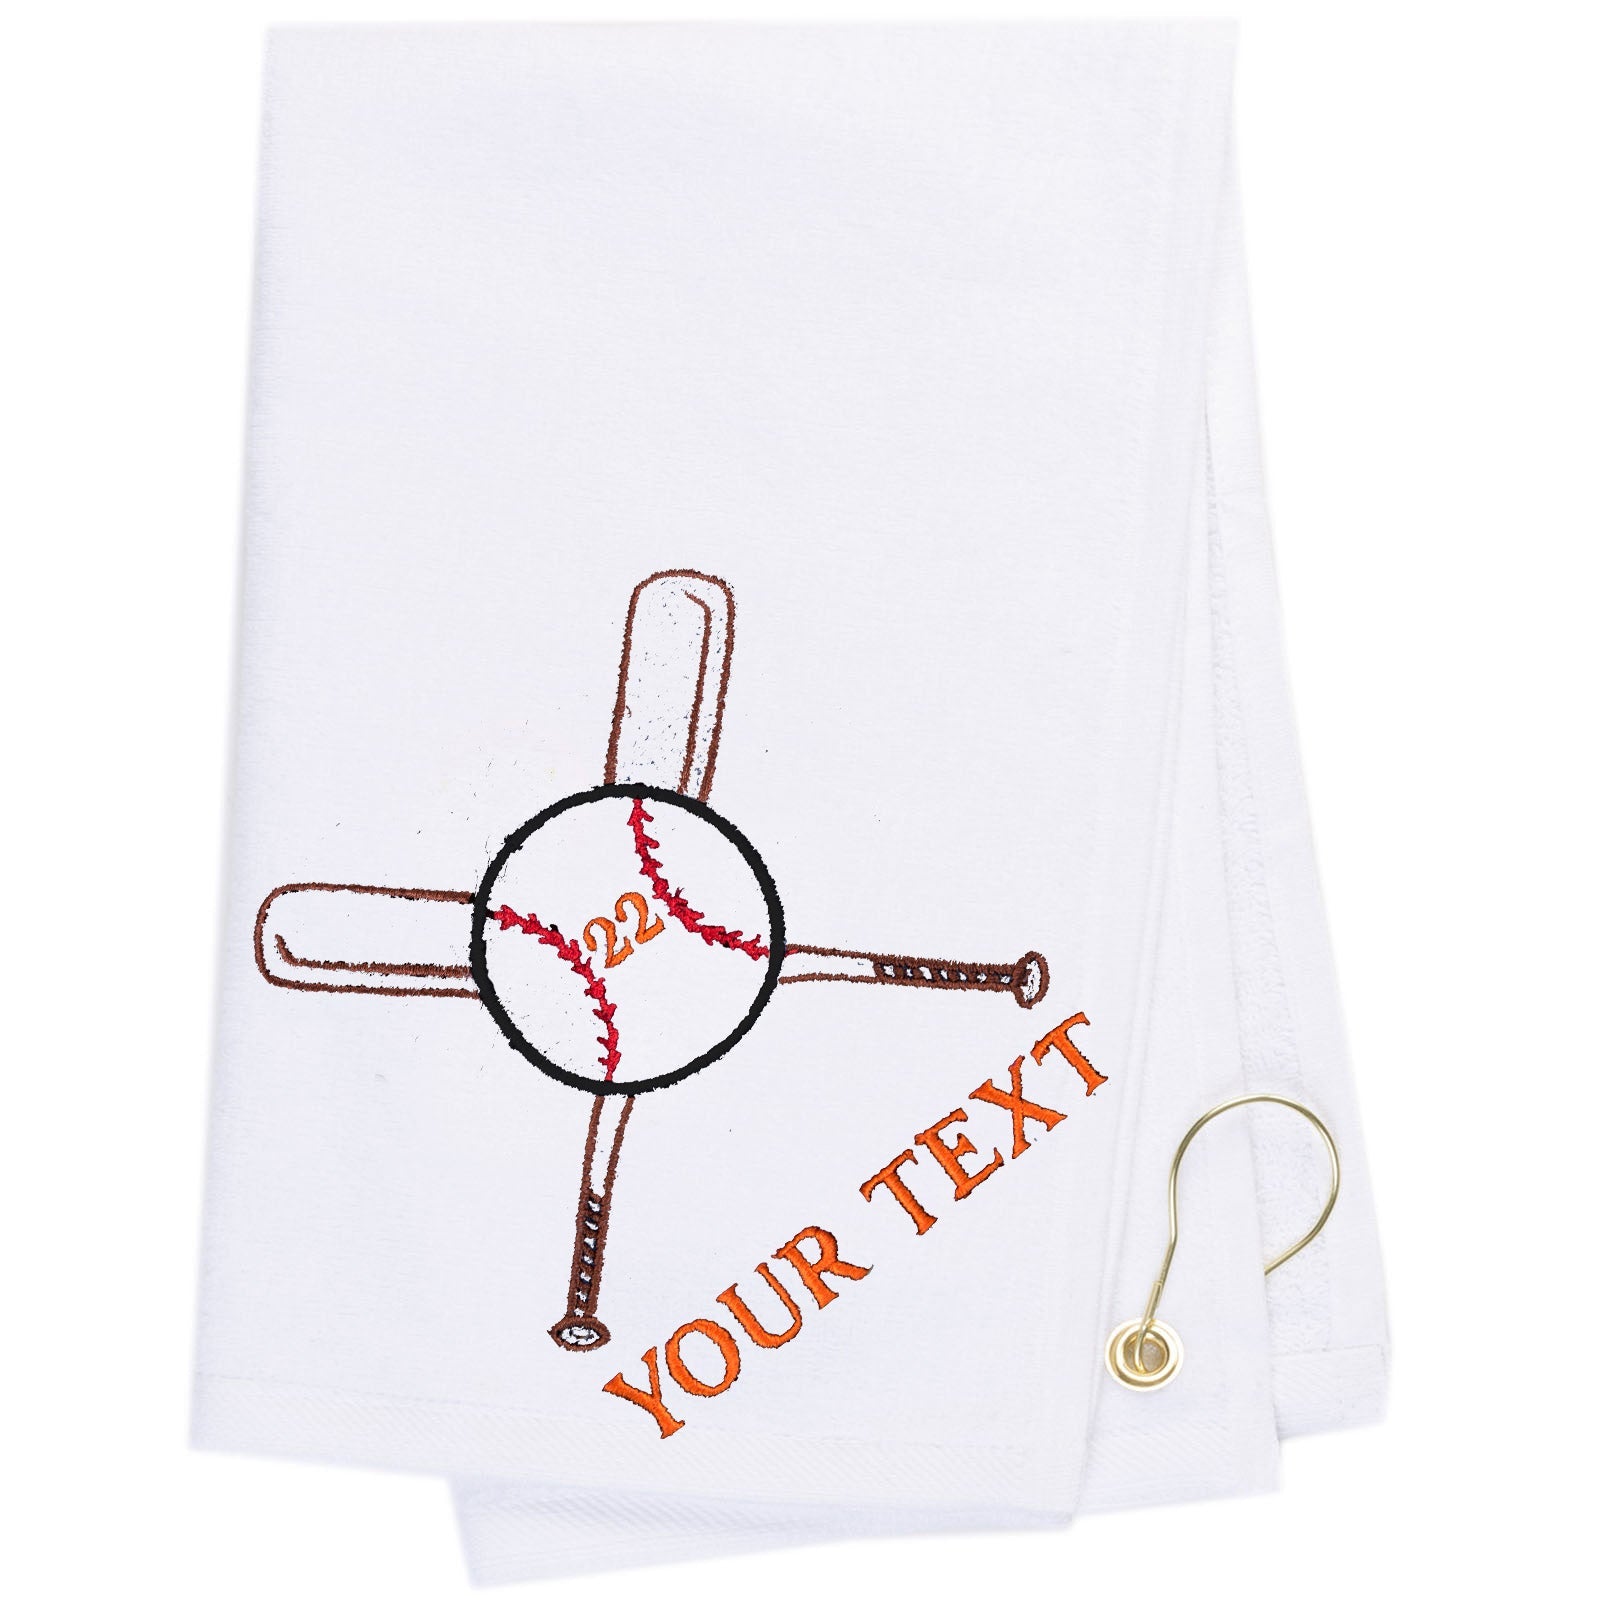 Mato & Hash Baseball Towels Embroidery - Mato & Hash